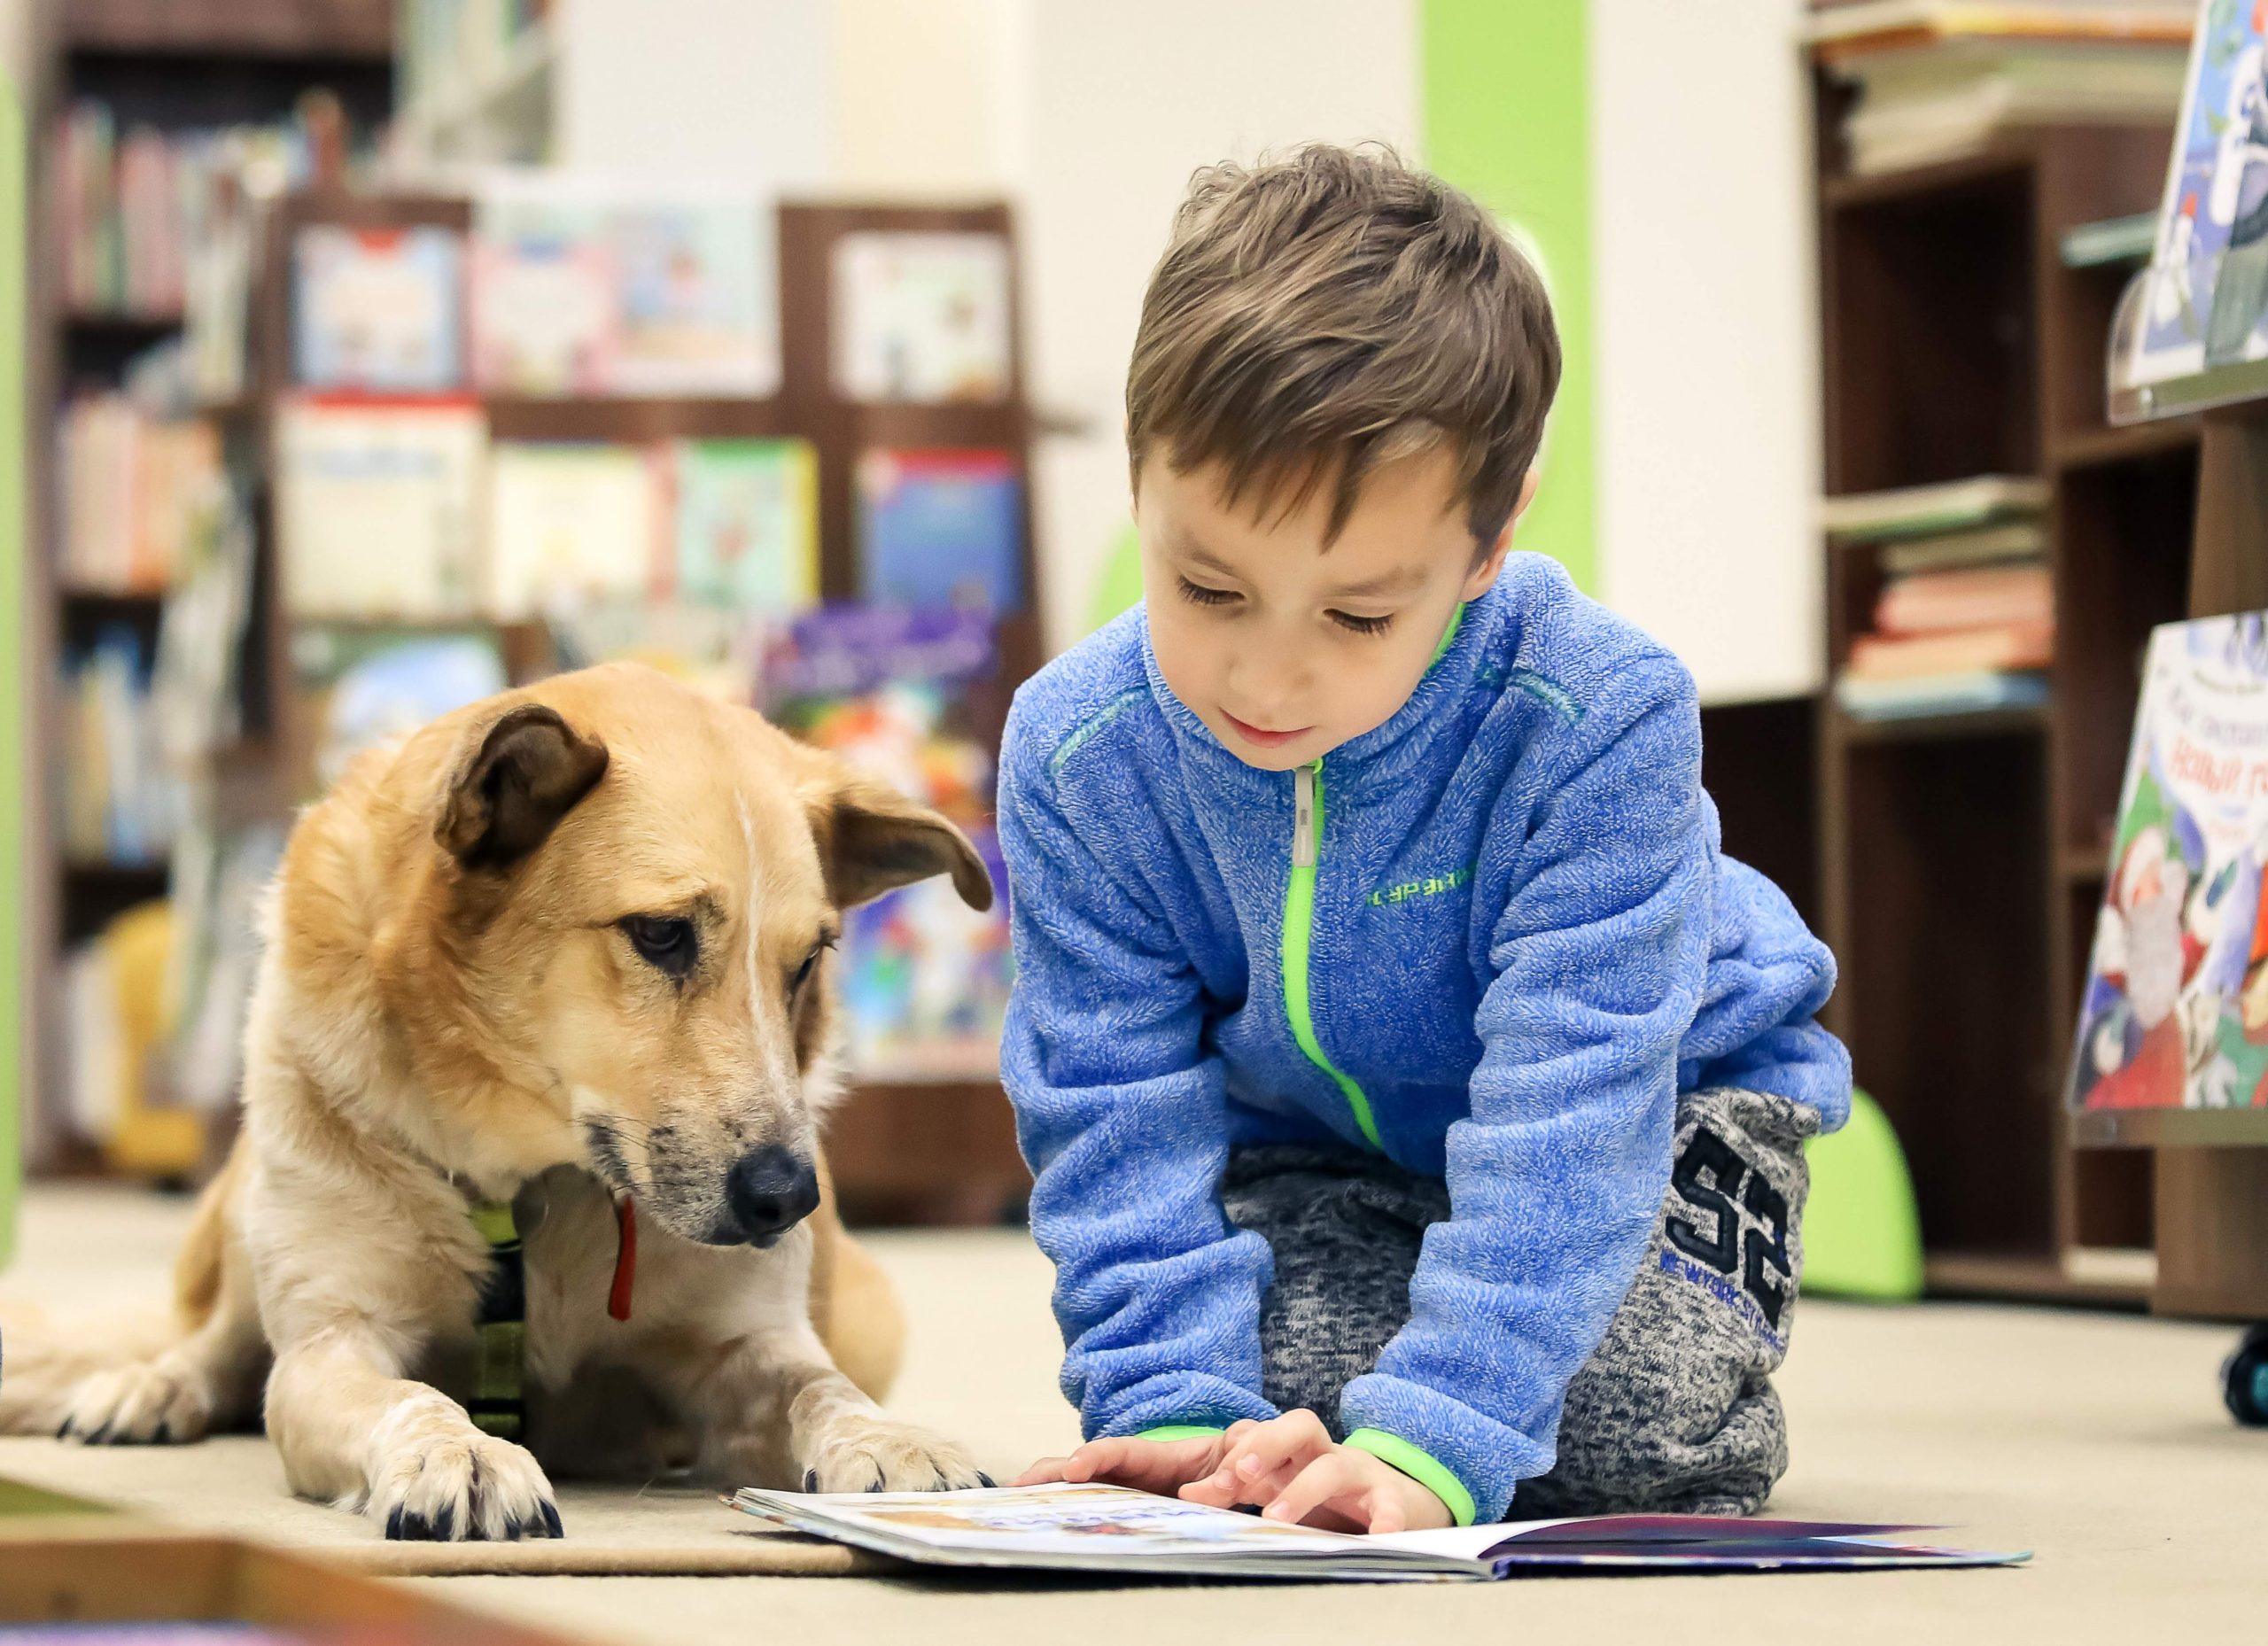 Верный слушатель, или как собаки помогают привить любовь к чтению в Государственной детской библиотеке. Фото: архив Российской государственной детской библиотеки